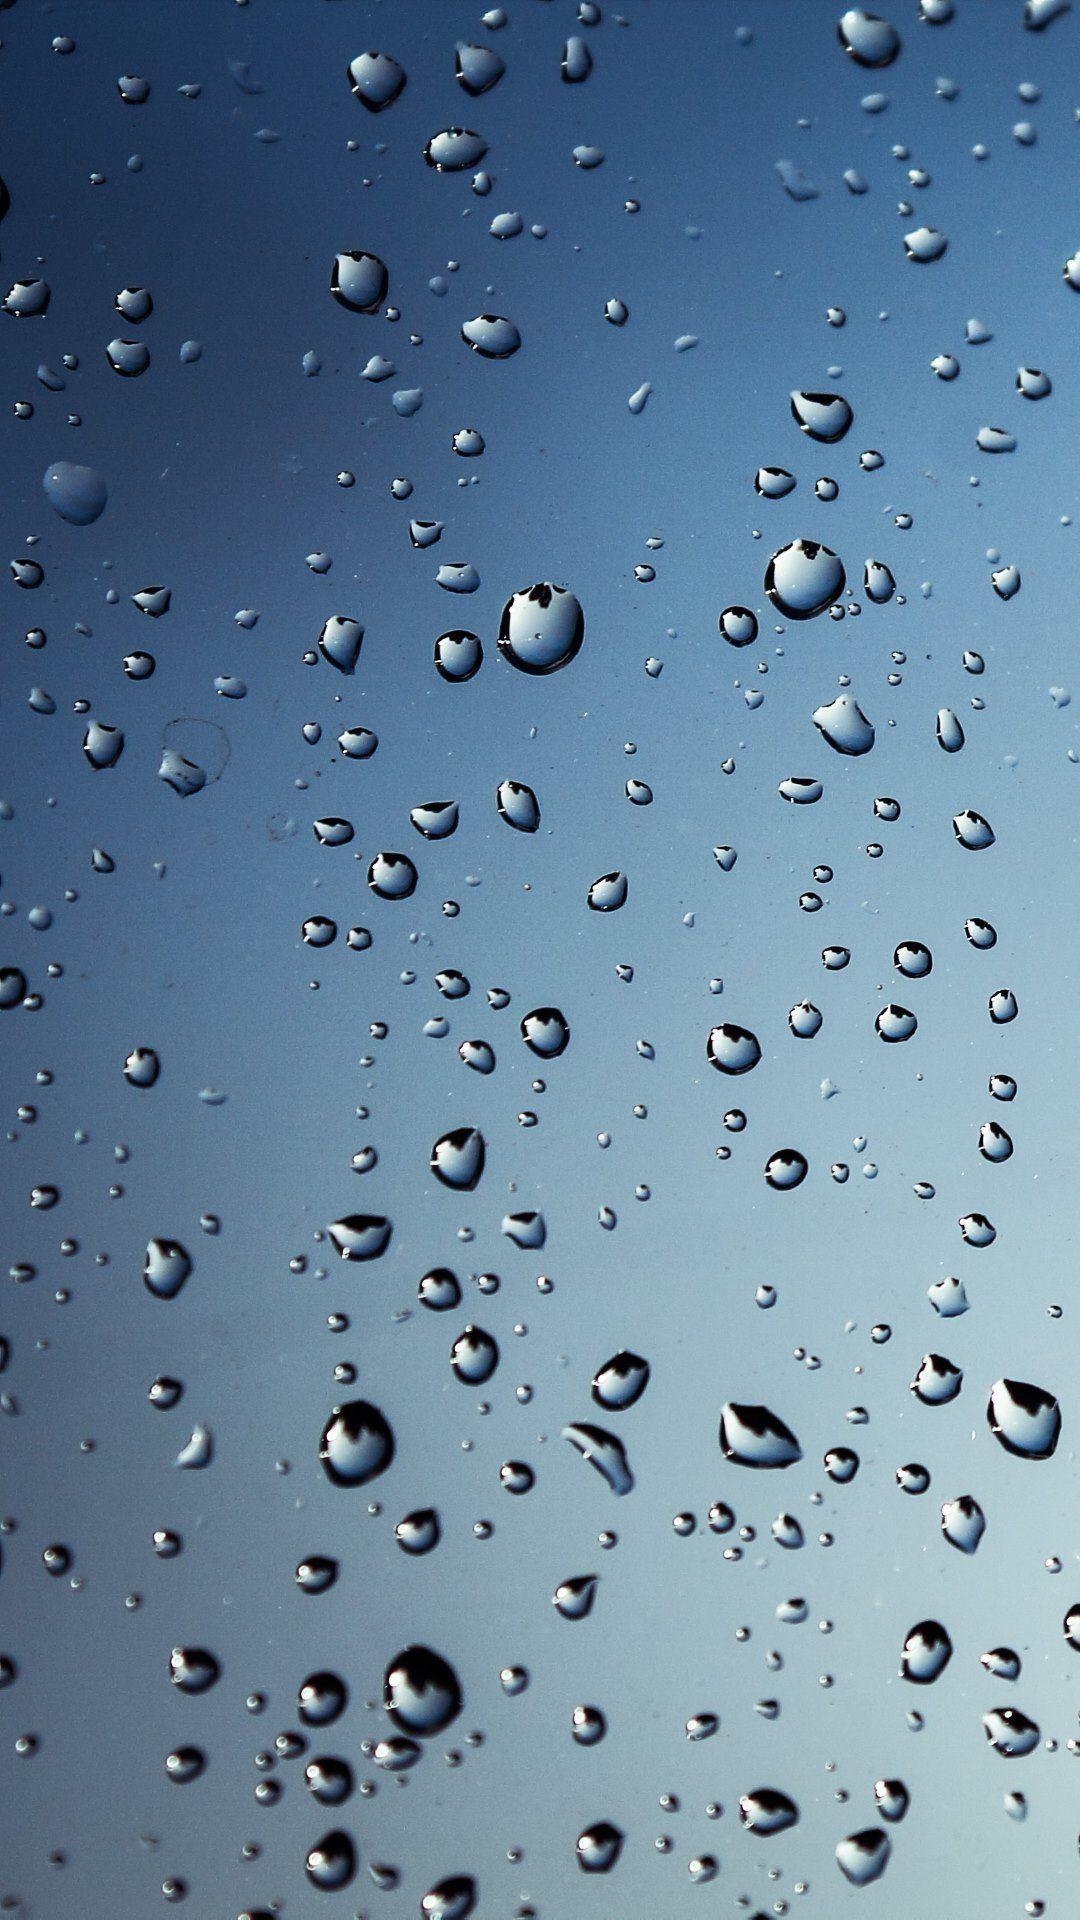 Rain Drops on Window Wallpaper. HD Wallpaper. Rain wallpaper, Rain drops on window, Rain drops